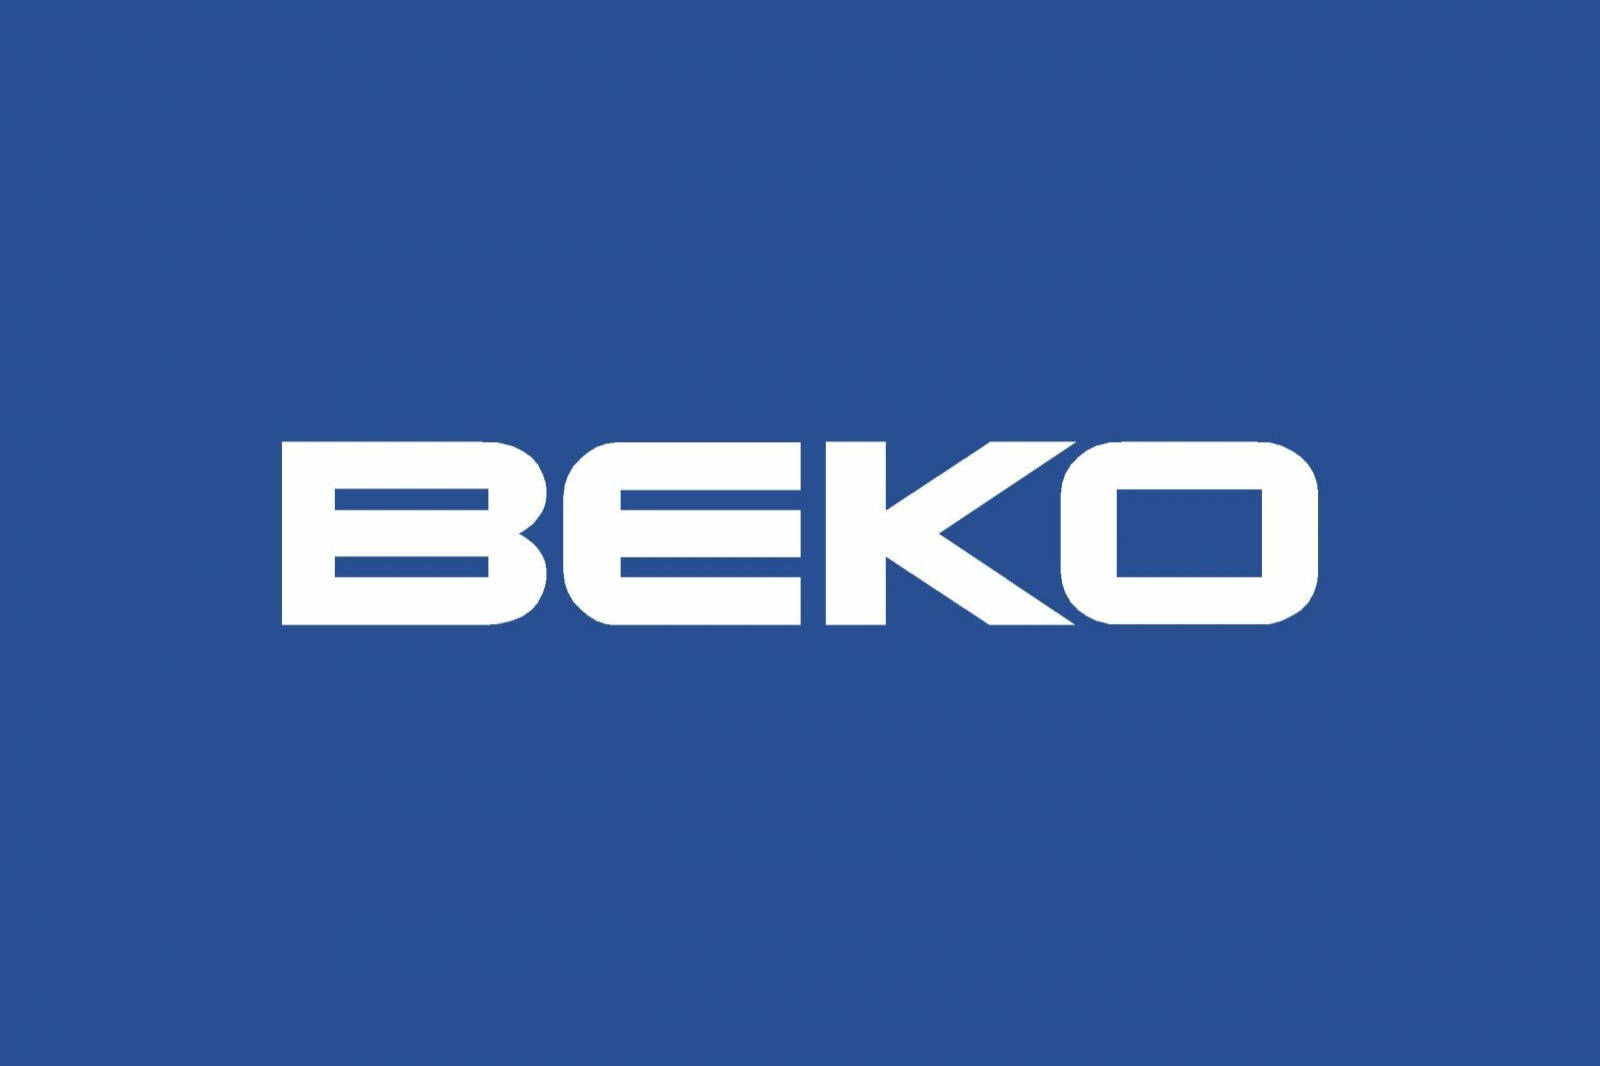 Век бытовая техника. Beko. Beko бренд. Beko logo. Надпись Beko.